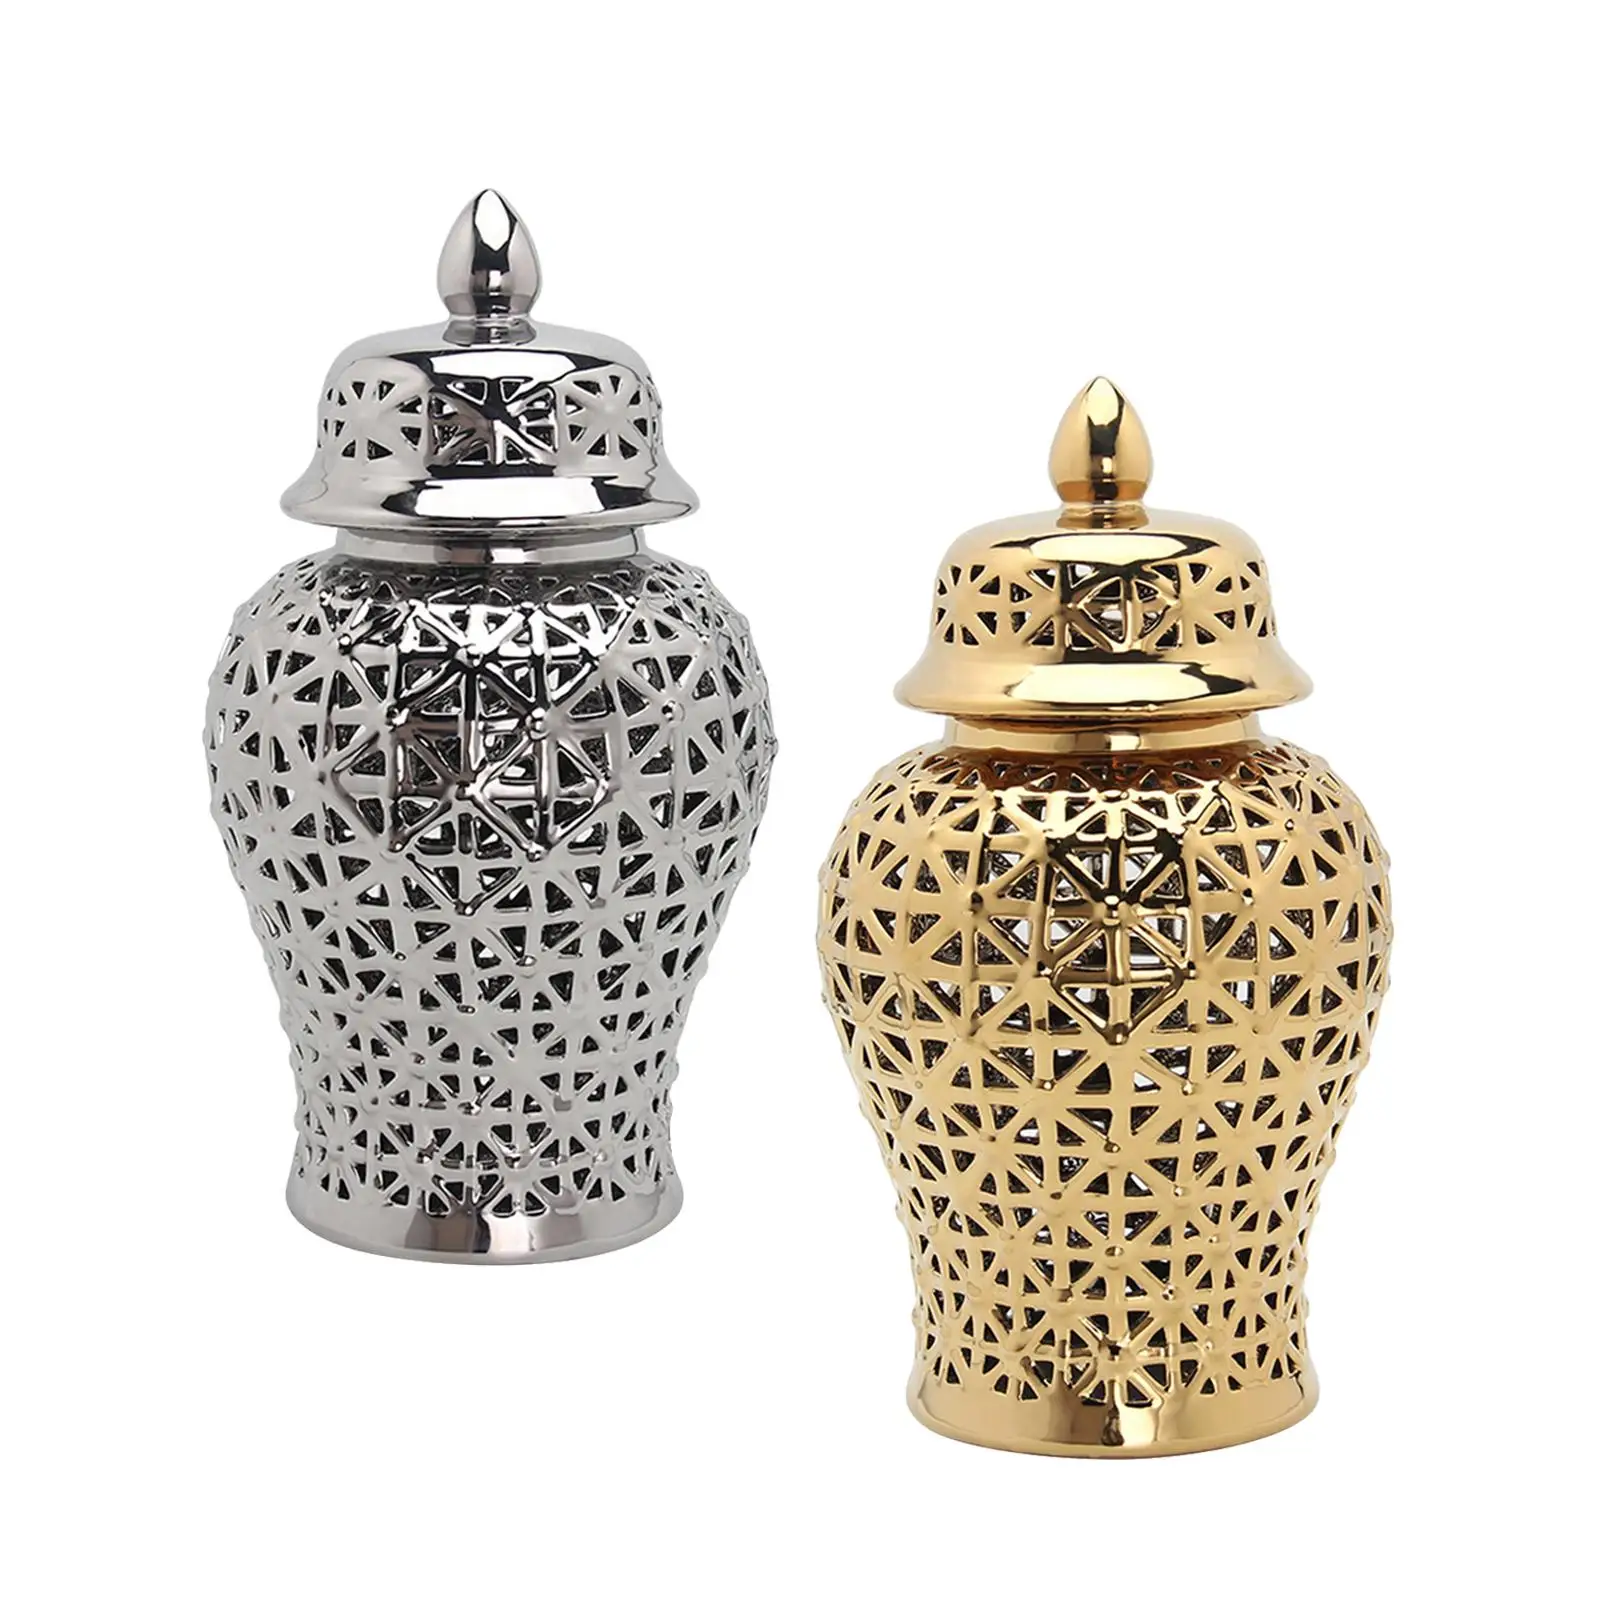 Traditional Ceramic Ginger Jar Decorative Porcelain Jar Handicraft for Home